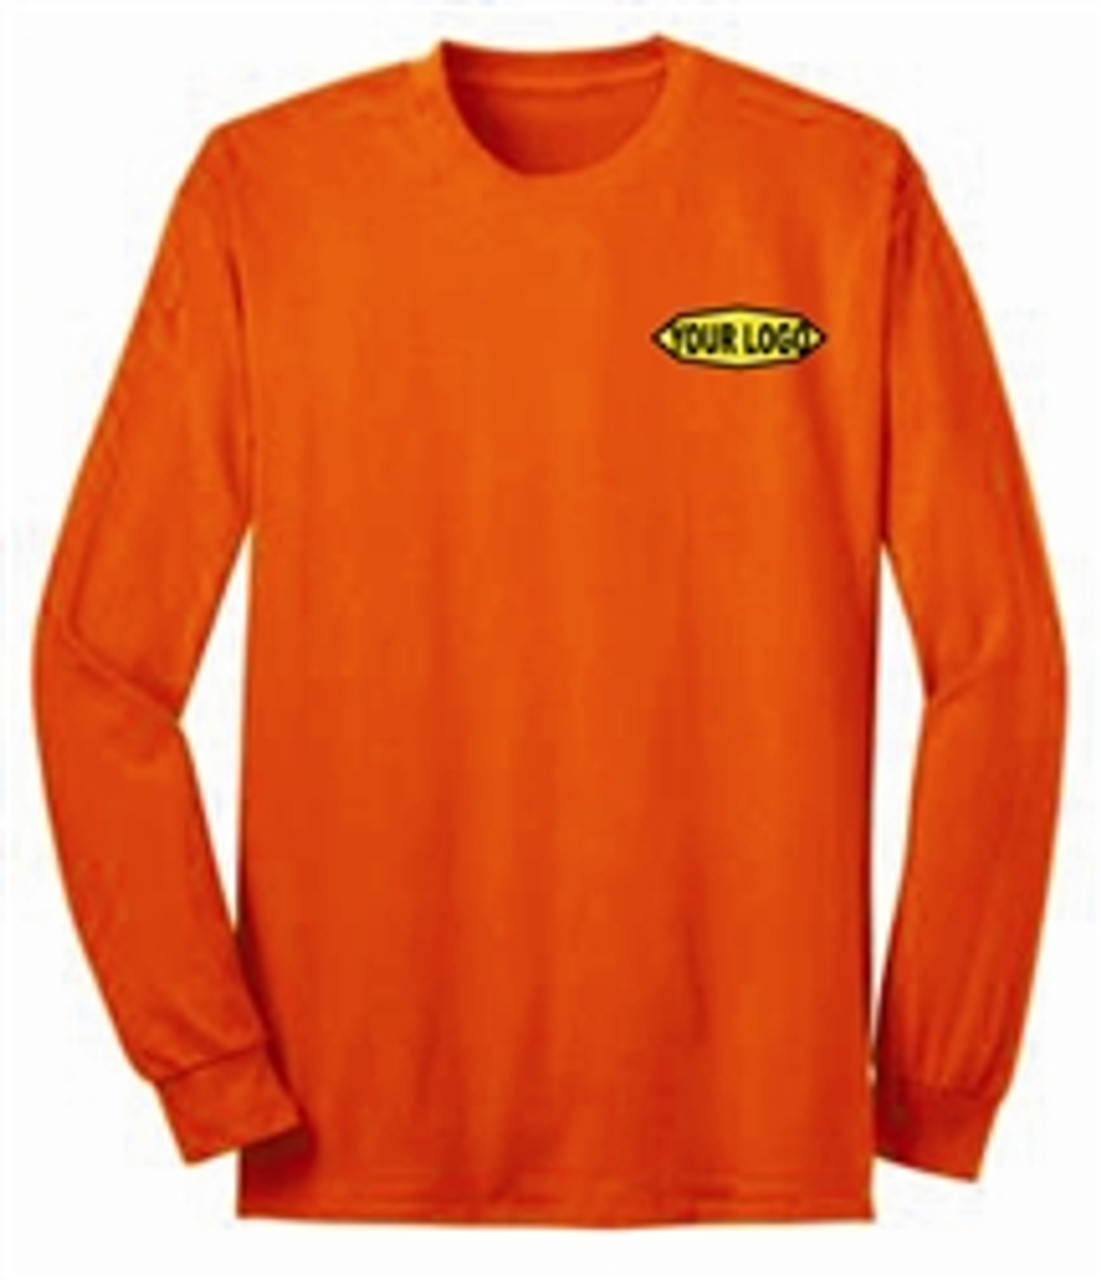 Safety Orange Long Sleeve Custom Printed TShirt | Printed Hi Vis Long Sleeve TShirt | Long Sleeve Safety Orange Shirt with Logo | Long Sleeve Pocket TShirt Safety Orange